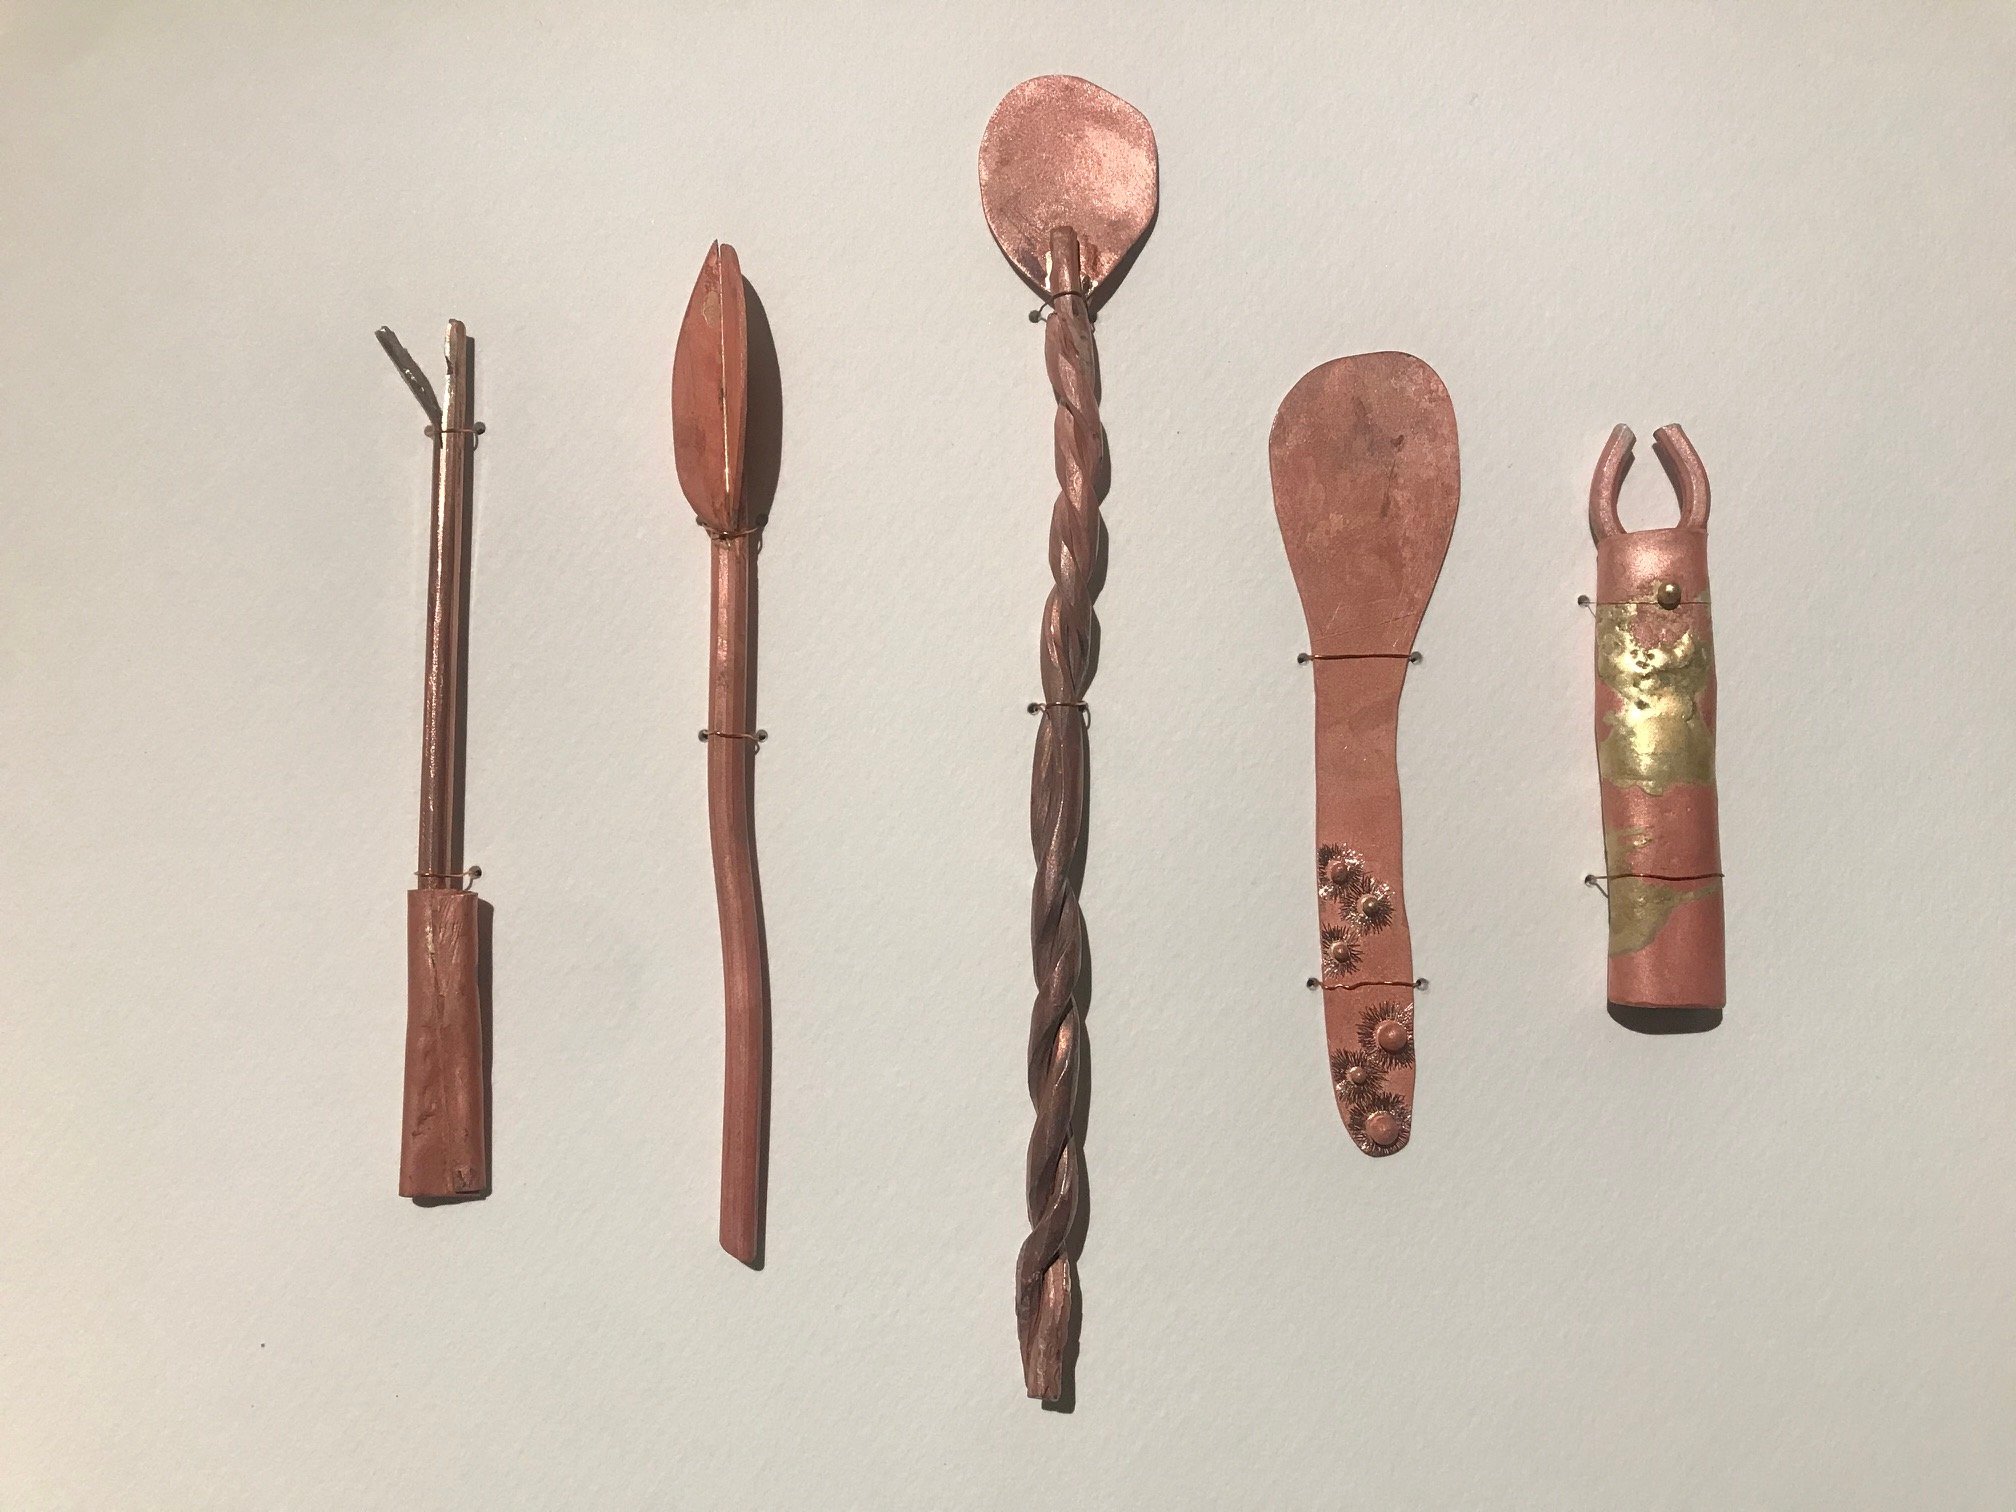  copper utensils for a copper mine trader, 2019 